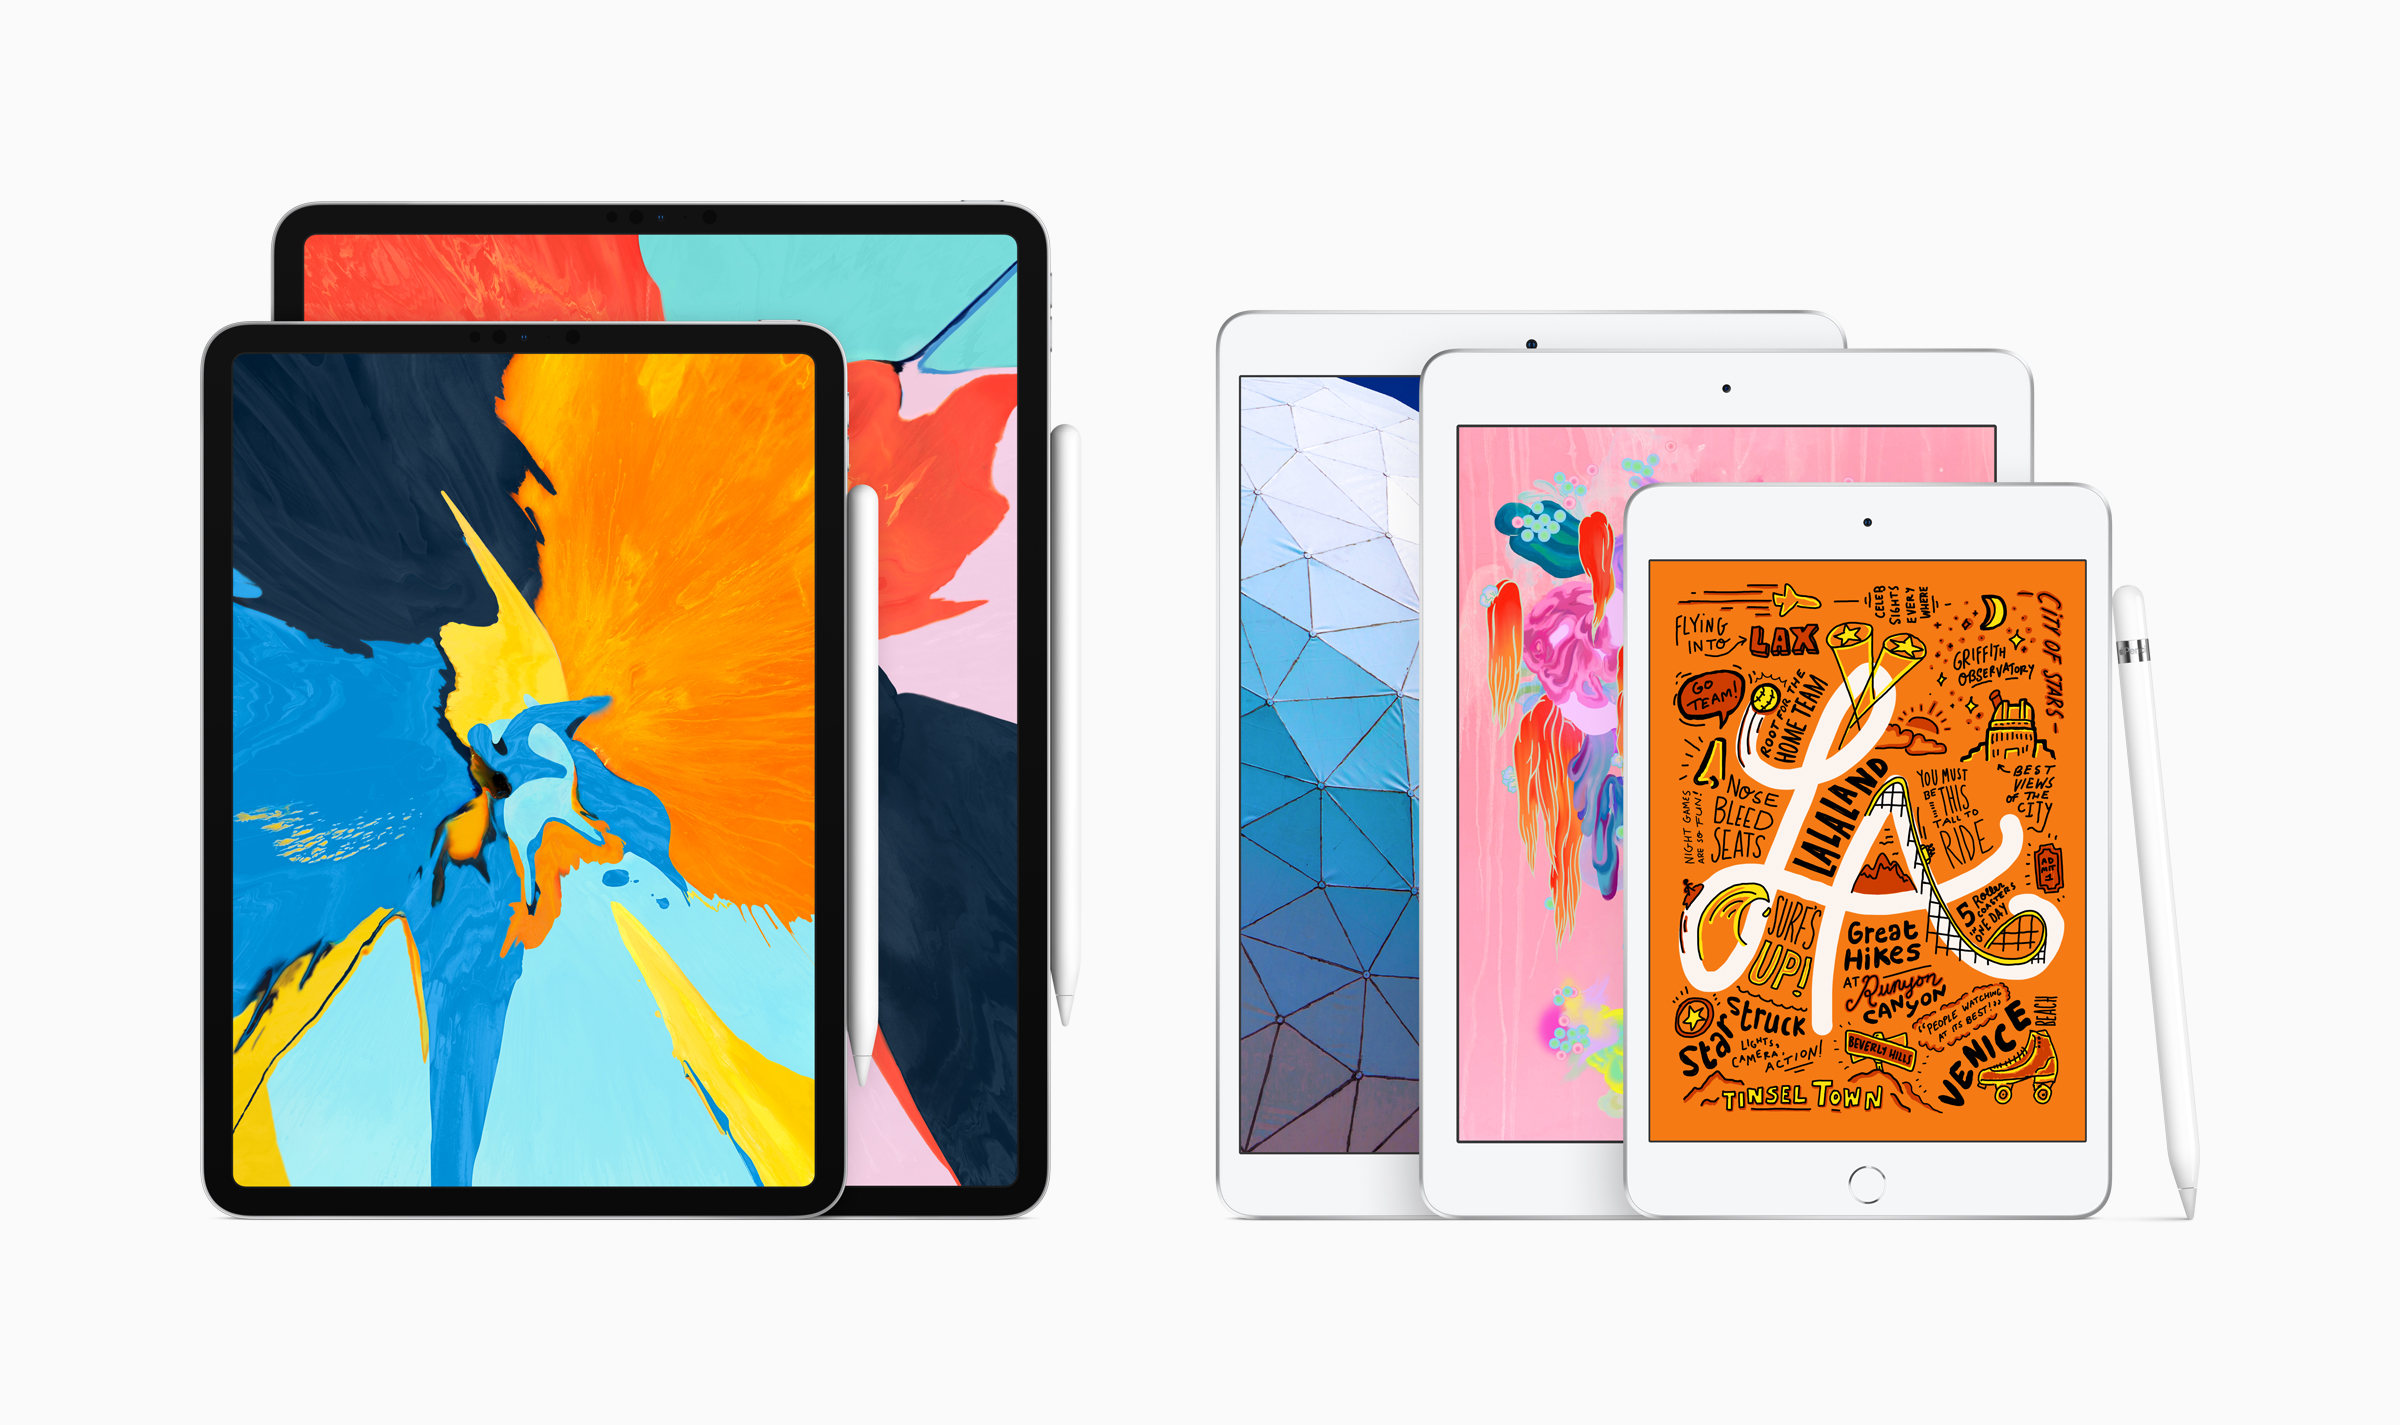 أبل تطلق الجيل الجديد من أجهزة iPad Air و iPad Mini بجانب AirPods 2 والجيل الجديد من أجهزة iMac